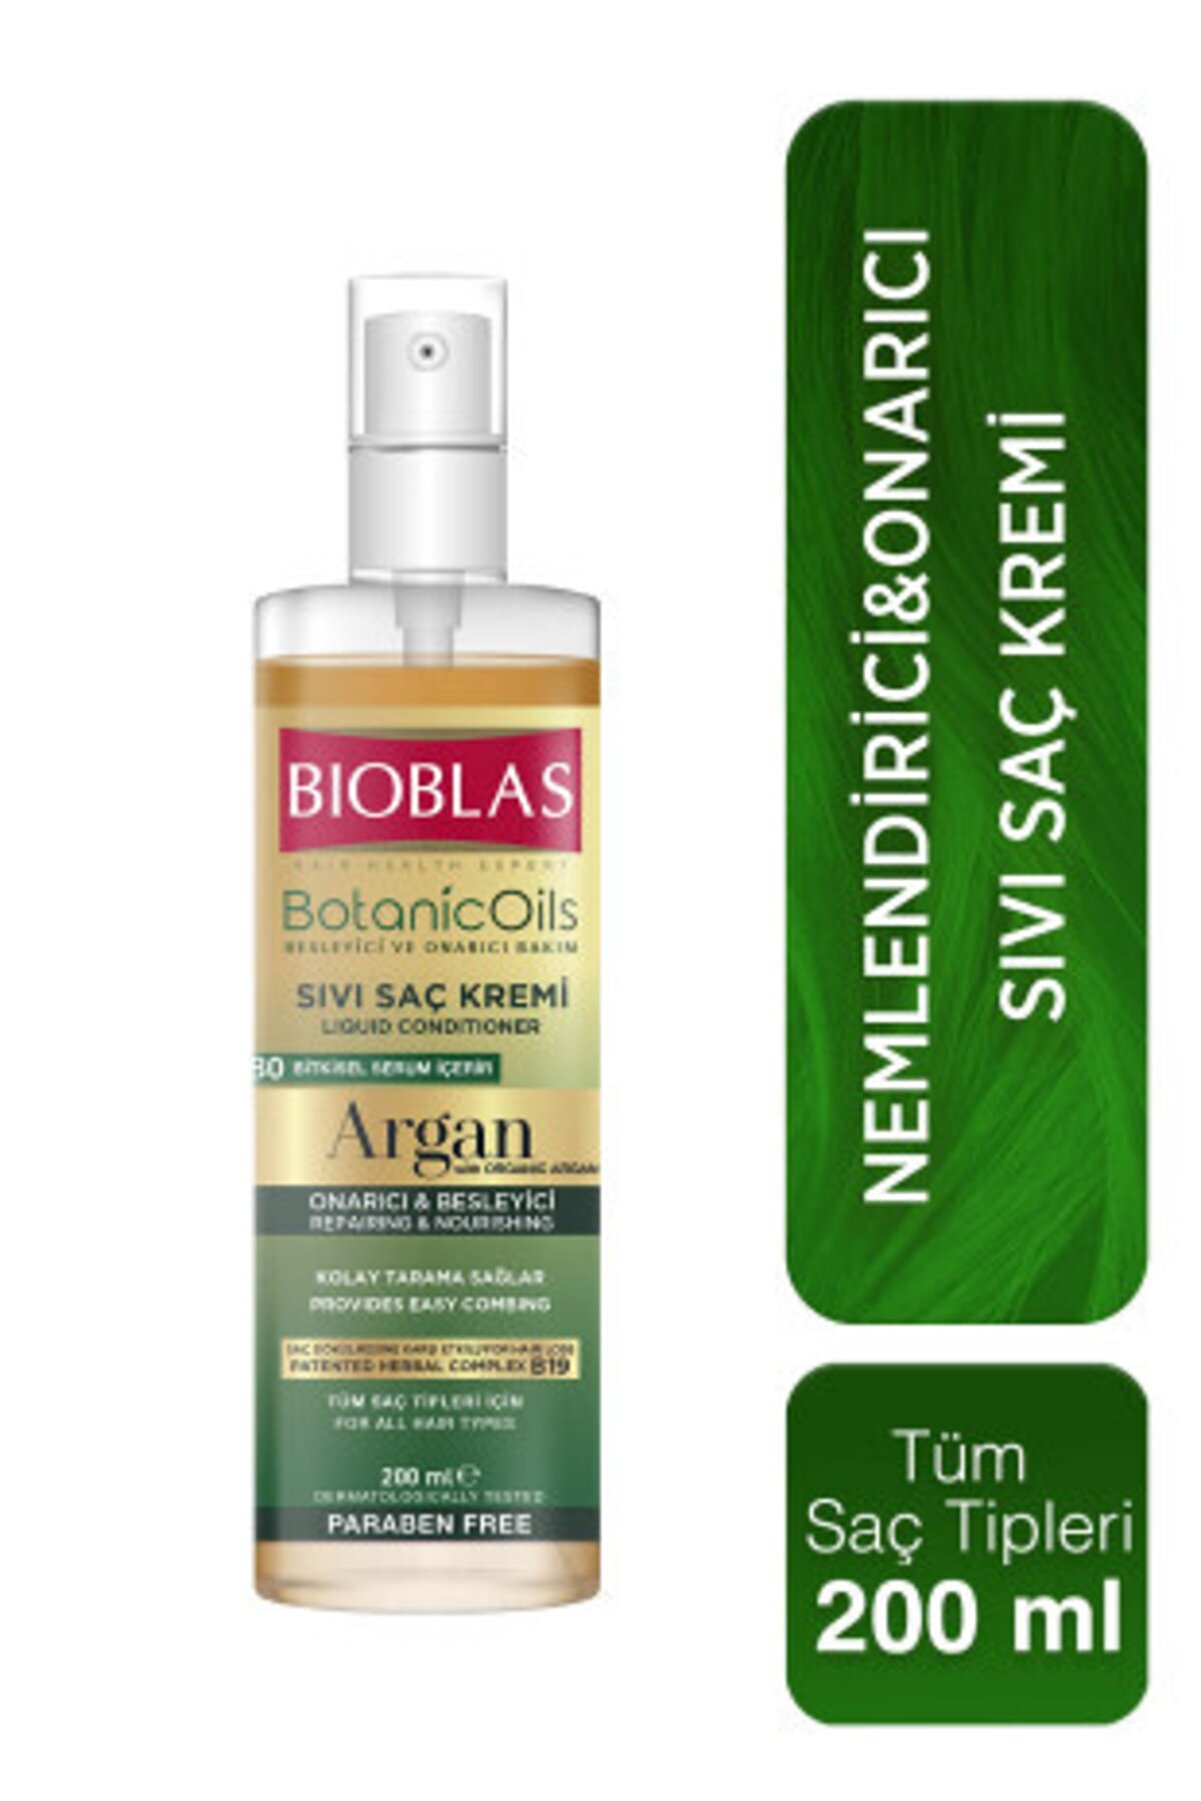 Bioblas Argan Yağlı Sıvı Saç Kremi 200 Ml